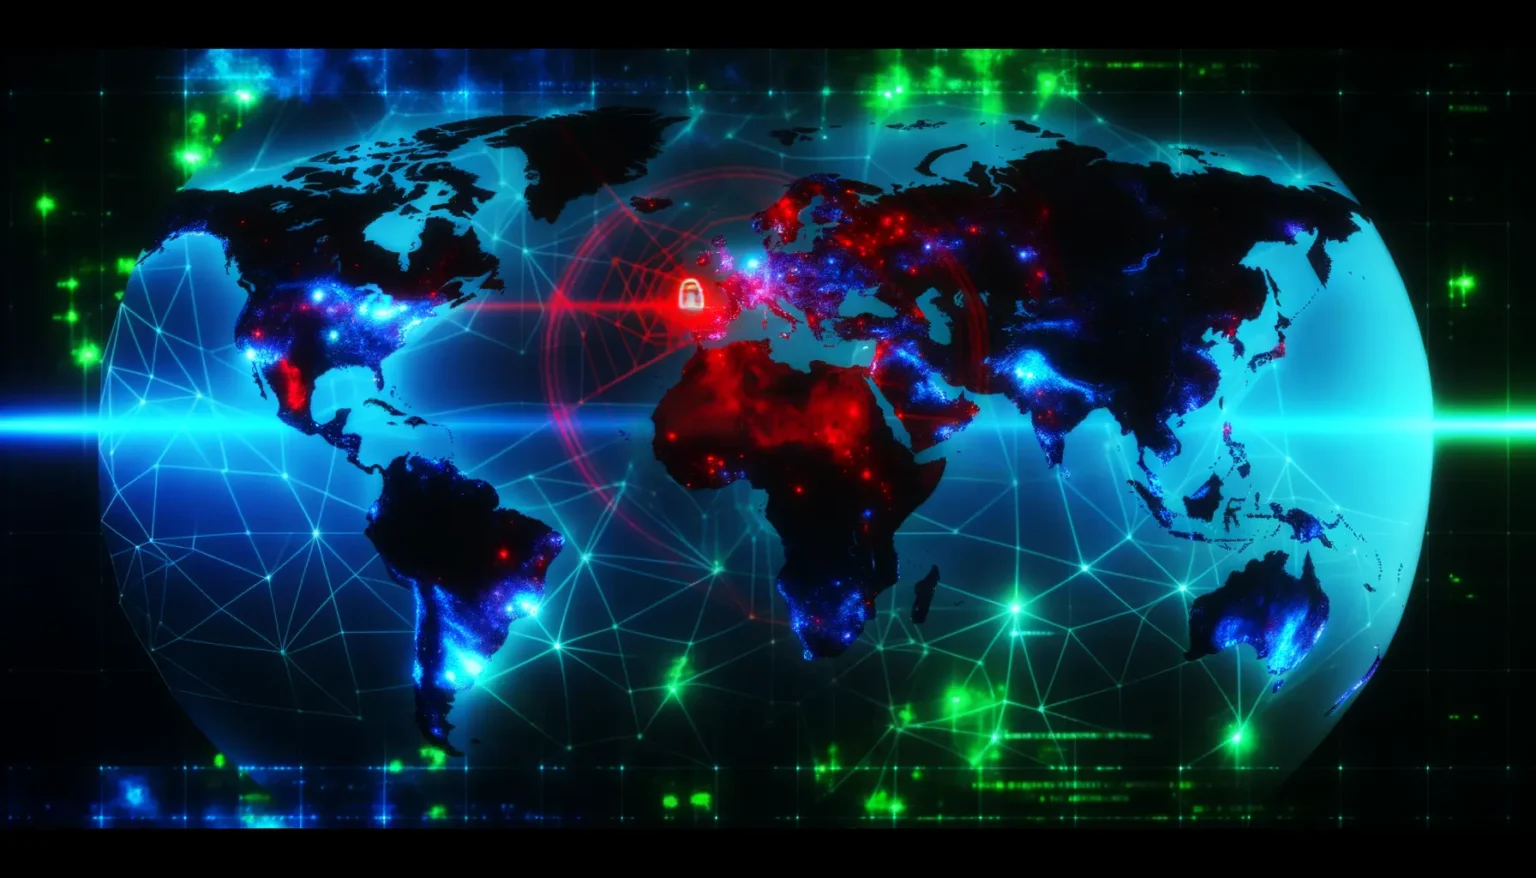 Digital illustrierte Weltkarte im Weltraum-Stil mit beleuchteten Netzwerkpunkten und Verbindungen, die die globale Vernetzung symbolisieren. Einzelne Länder sind in strahlendem Rot und Blau hervorgehoben, um entweder Aktivität oder Hitze darzustellen. Ein Schlosssymbol über dem europäischen Kontinent deutet möglicherweise auf Sicherheits- oder Datenschutzthemen hin. Der Hintergrund ist mit grünen und blauen Leuchtspuren durchzogen, die ein futuristisches Gefühl vermitteln.